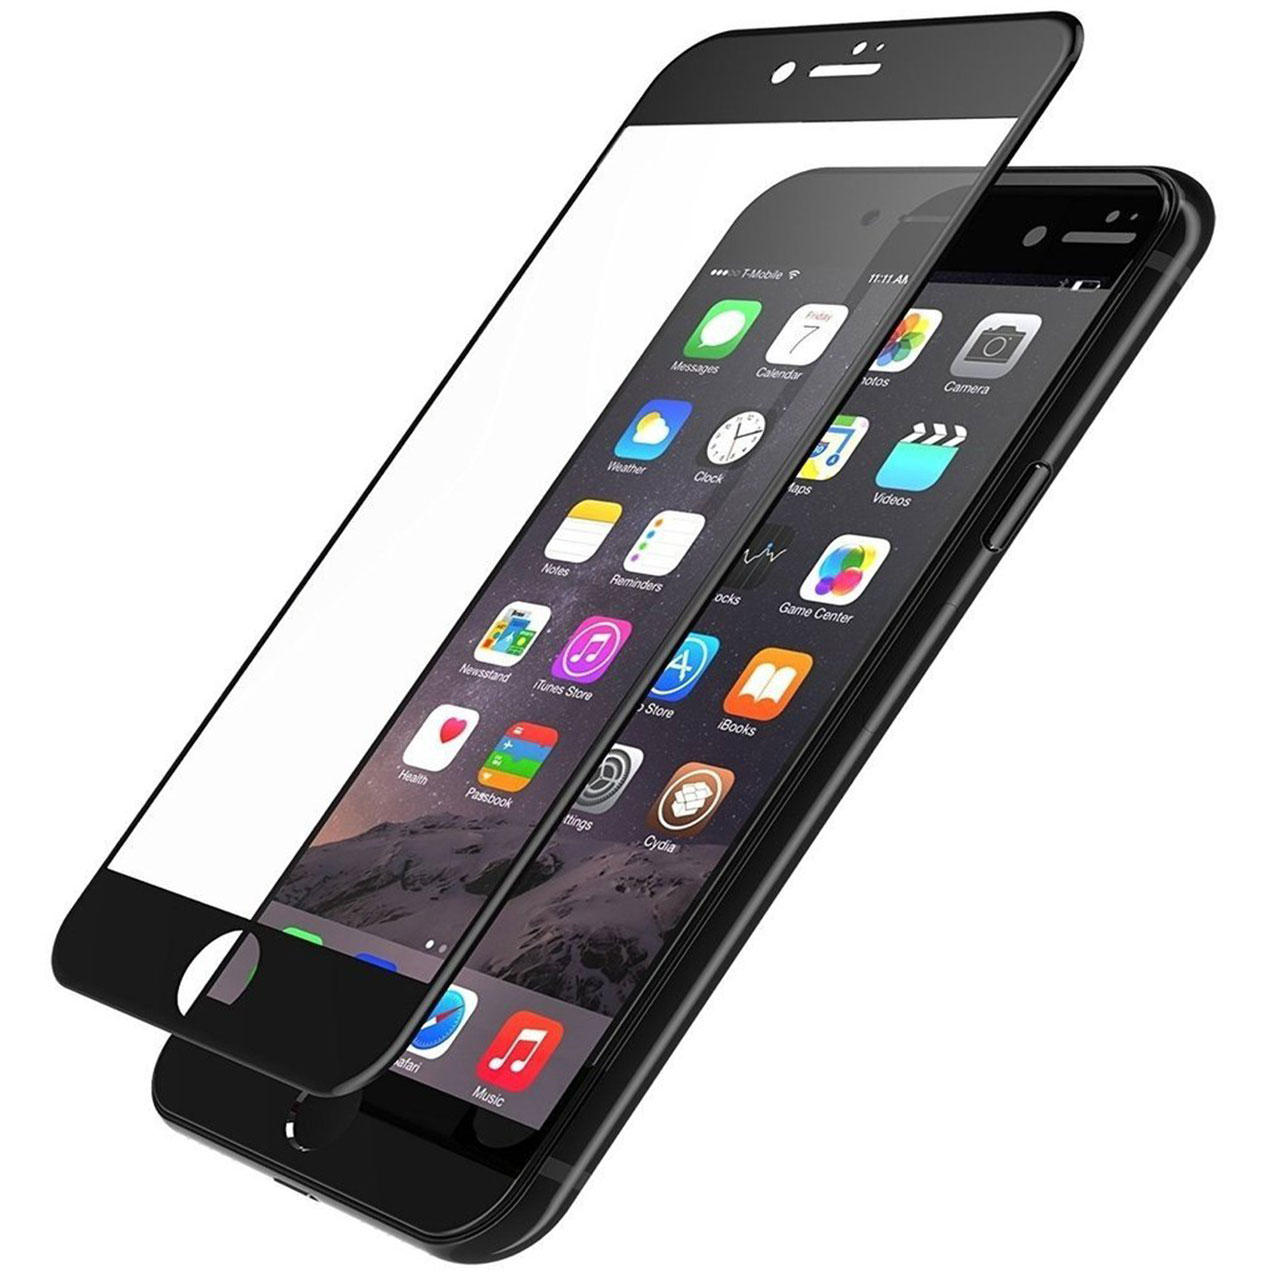 محافظ صفحه نمایش شیشه ای نیلکین مدل 3D AP Plus Pro مناسب برای گوشی موبایل اپل iPhone 6 / 6s